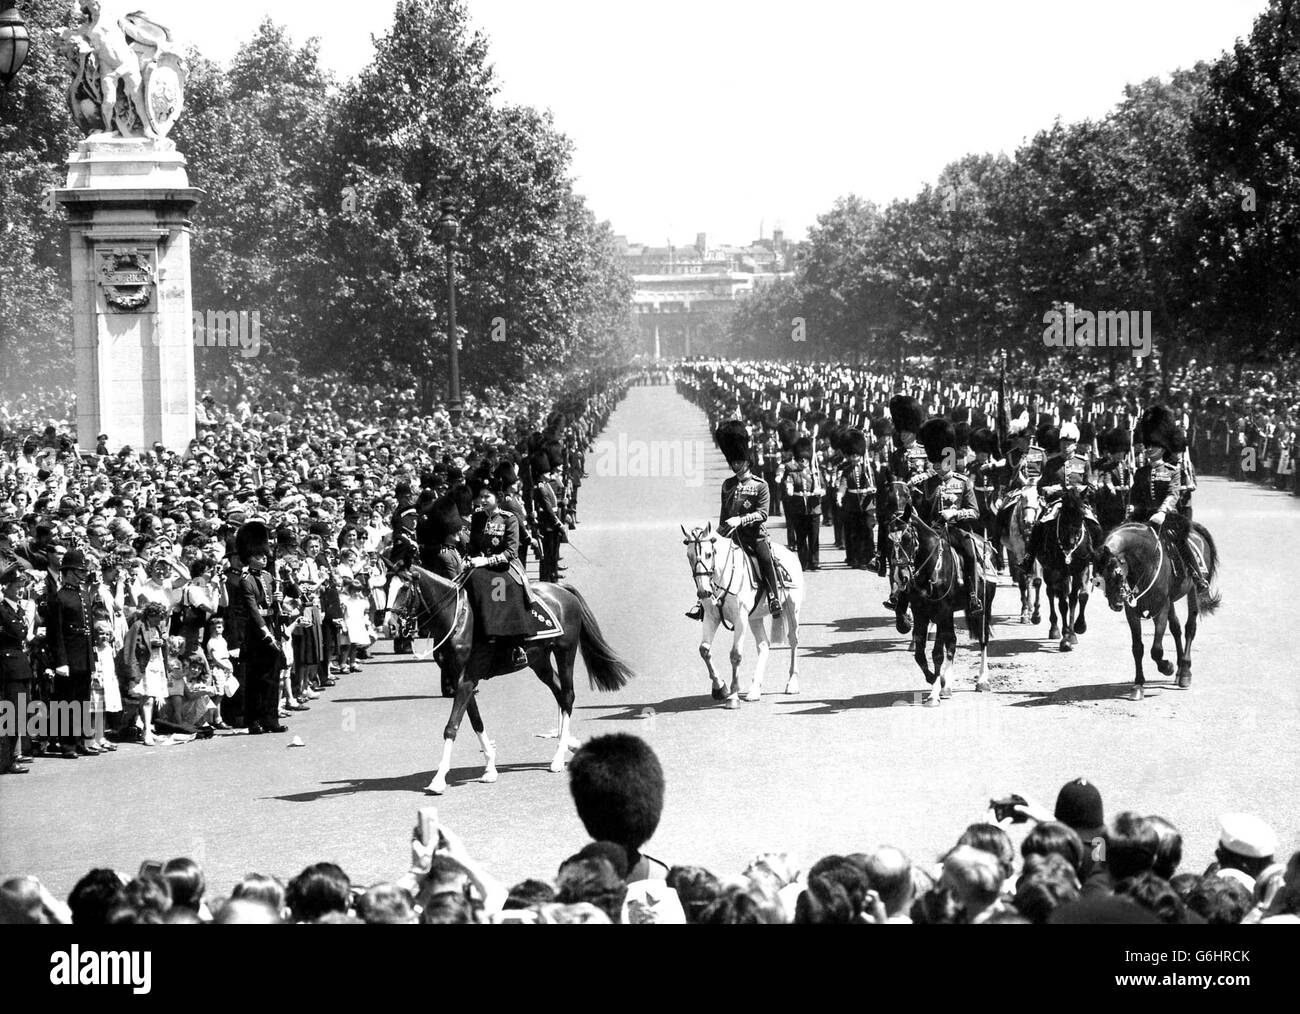 La Reine, sur le cheval de police de châtaignier Imp, mène ses gardes le long de la foule bordée Mall jusqu'au Palais de Buckingham après la cérémonie de Trooping The Color le 13 juin 1959. Derrière la Reine se trouvent le duc d'Édimbourg et le duc de Gloucester (au centre). Banque D'Images